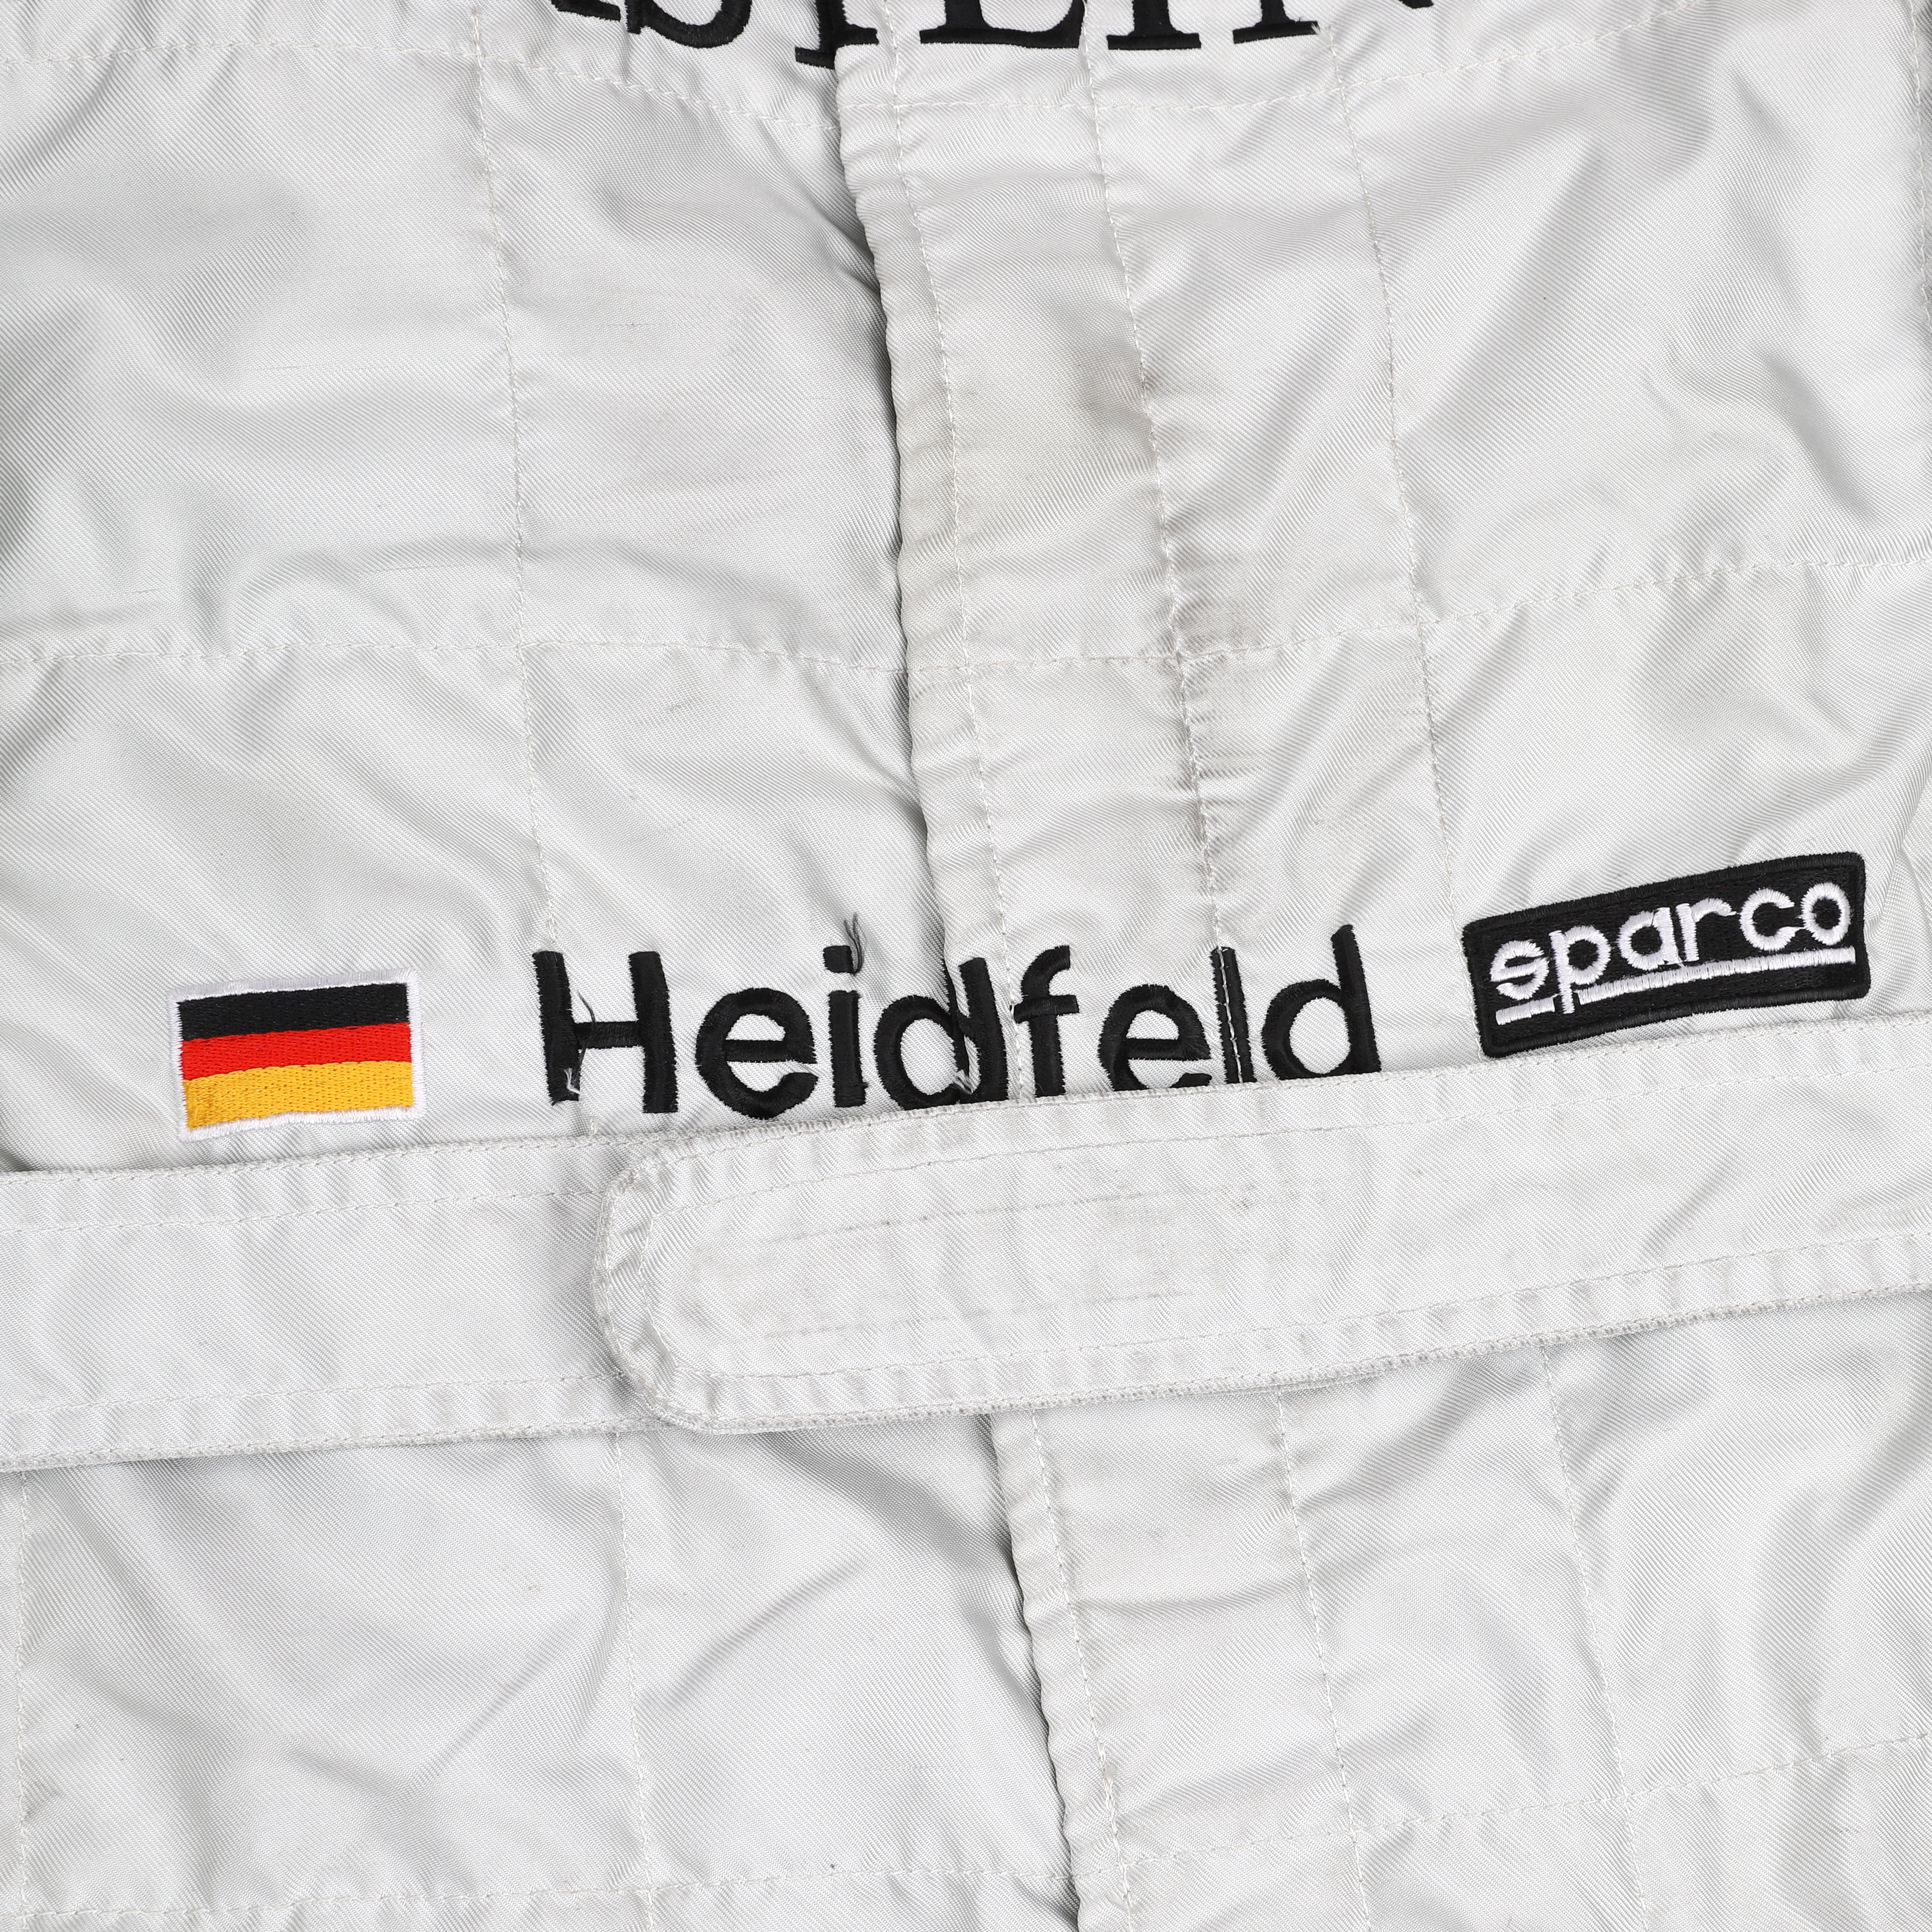 Nick Heidfeld 1998 Replica McLaren F1 Team Race Suit